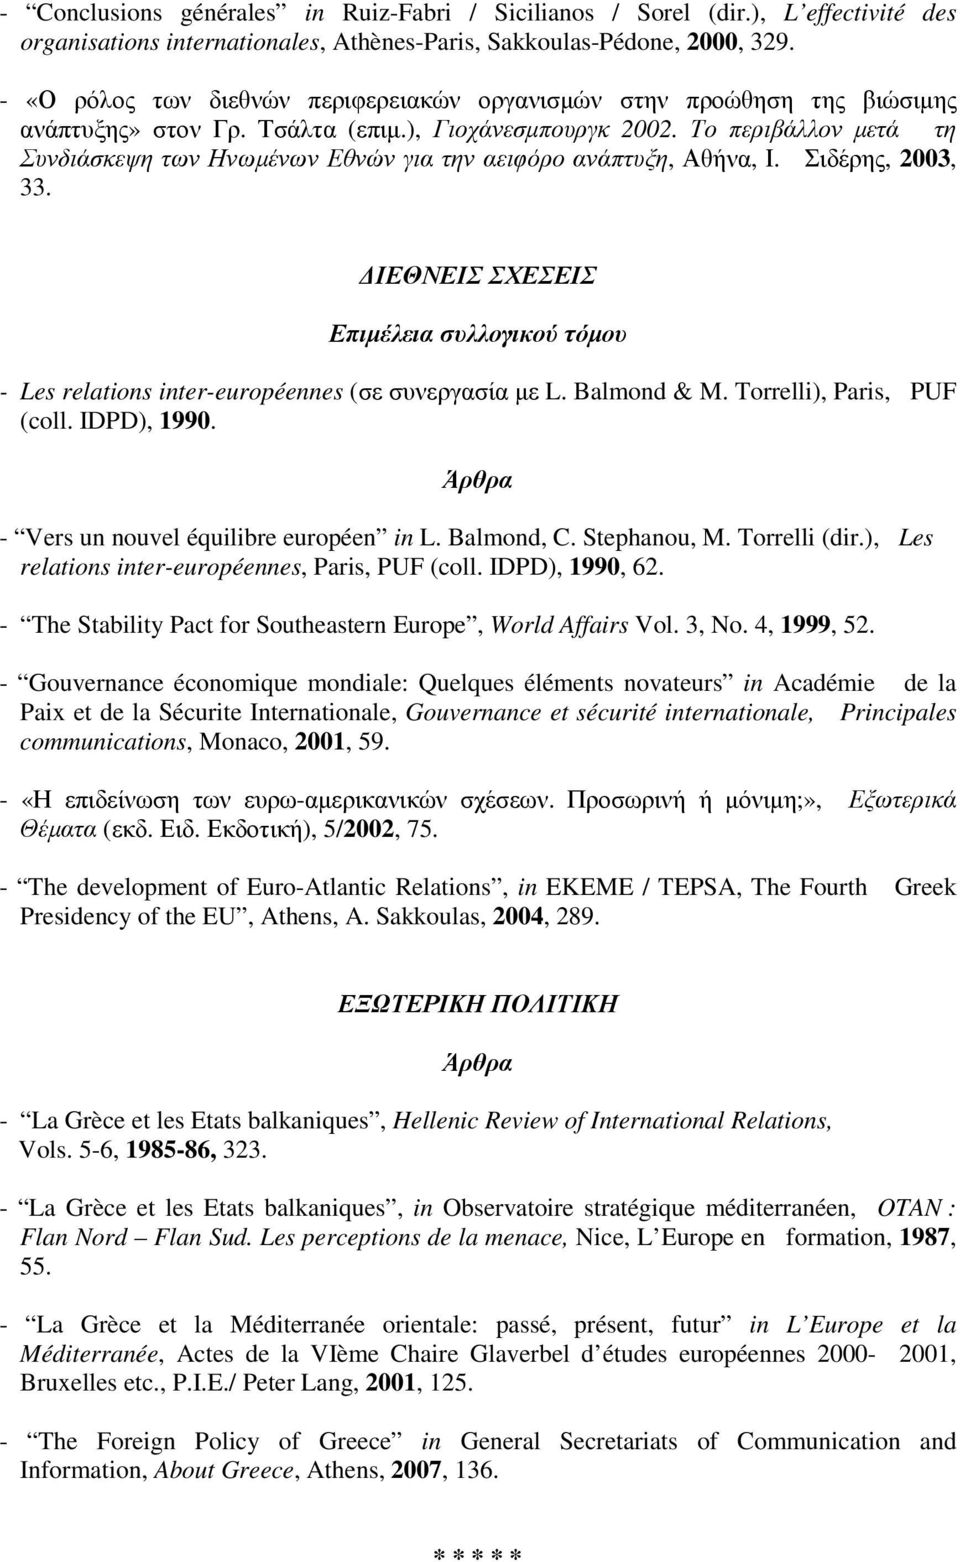 Το περιβάλλον µετά τη Συνδιάσκεψη των Ηνωµένων Εθνών για την αειφόρο ανάπτυξη, Αθήνα, Ι. Σιδέρης, 2003, 33.